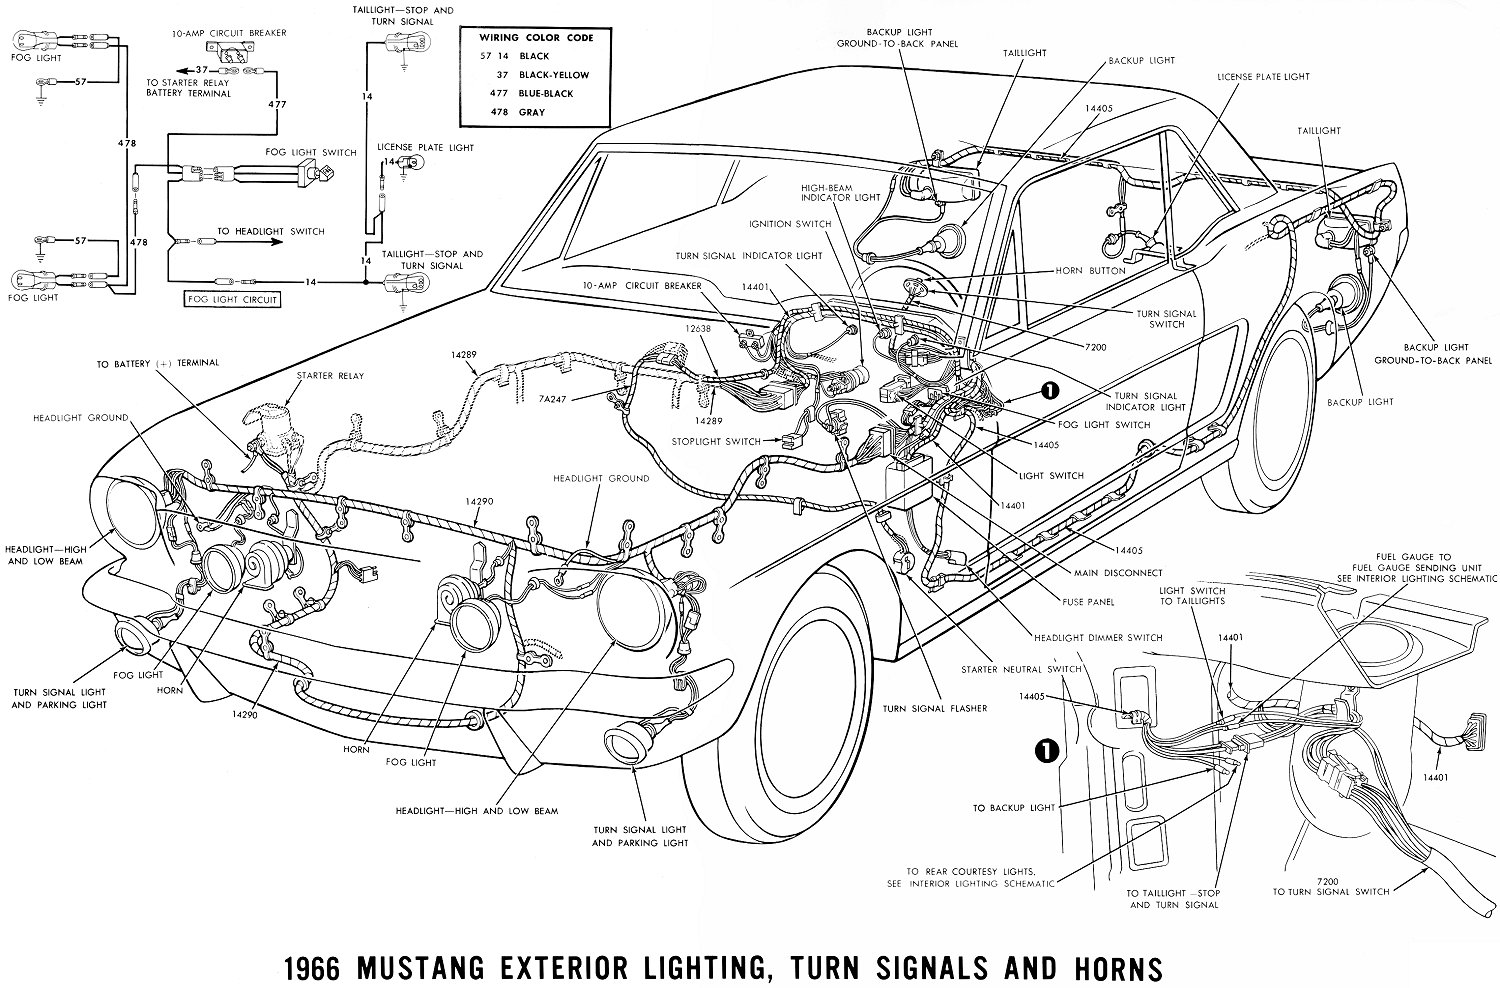 1961 390 Cadillac Engine Vacuum Hose Diagram